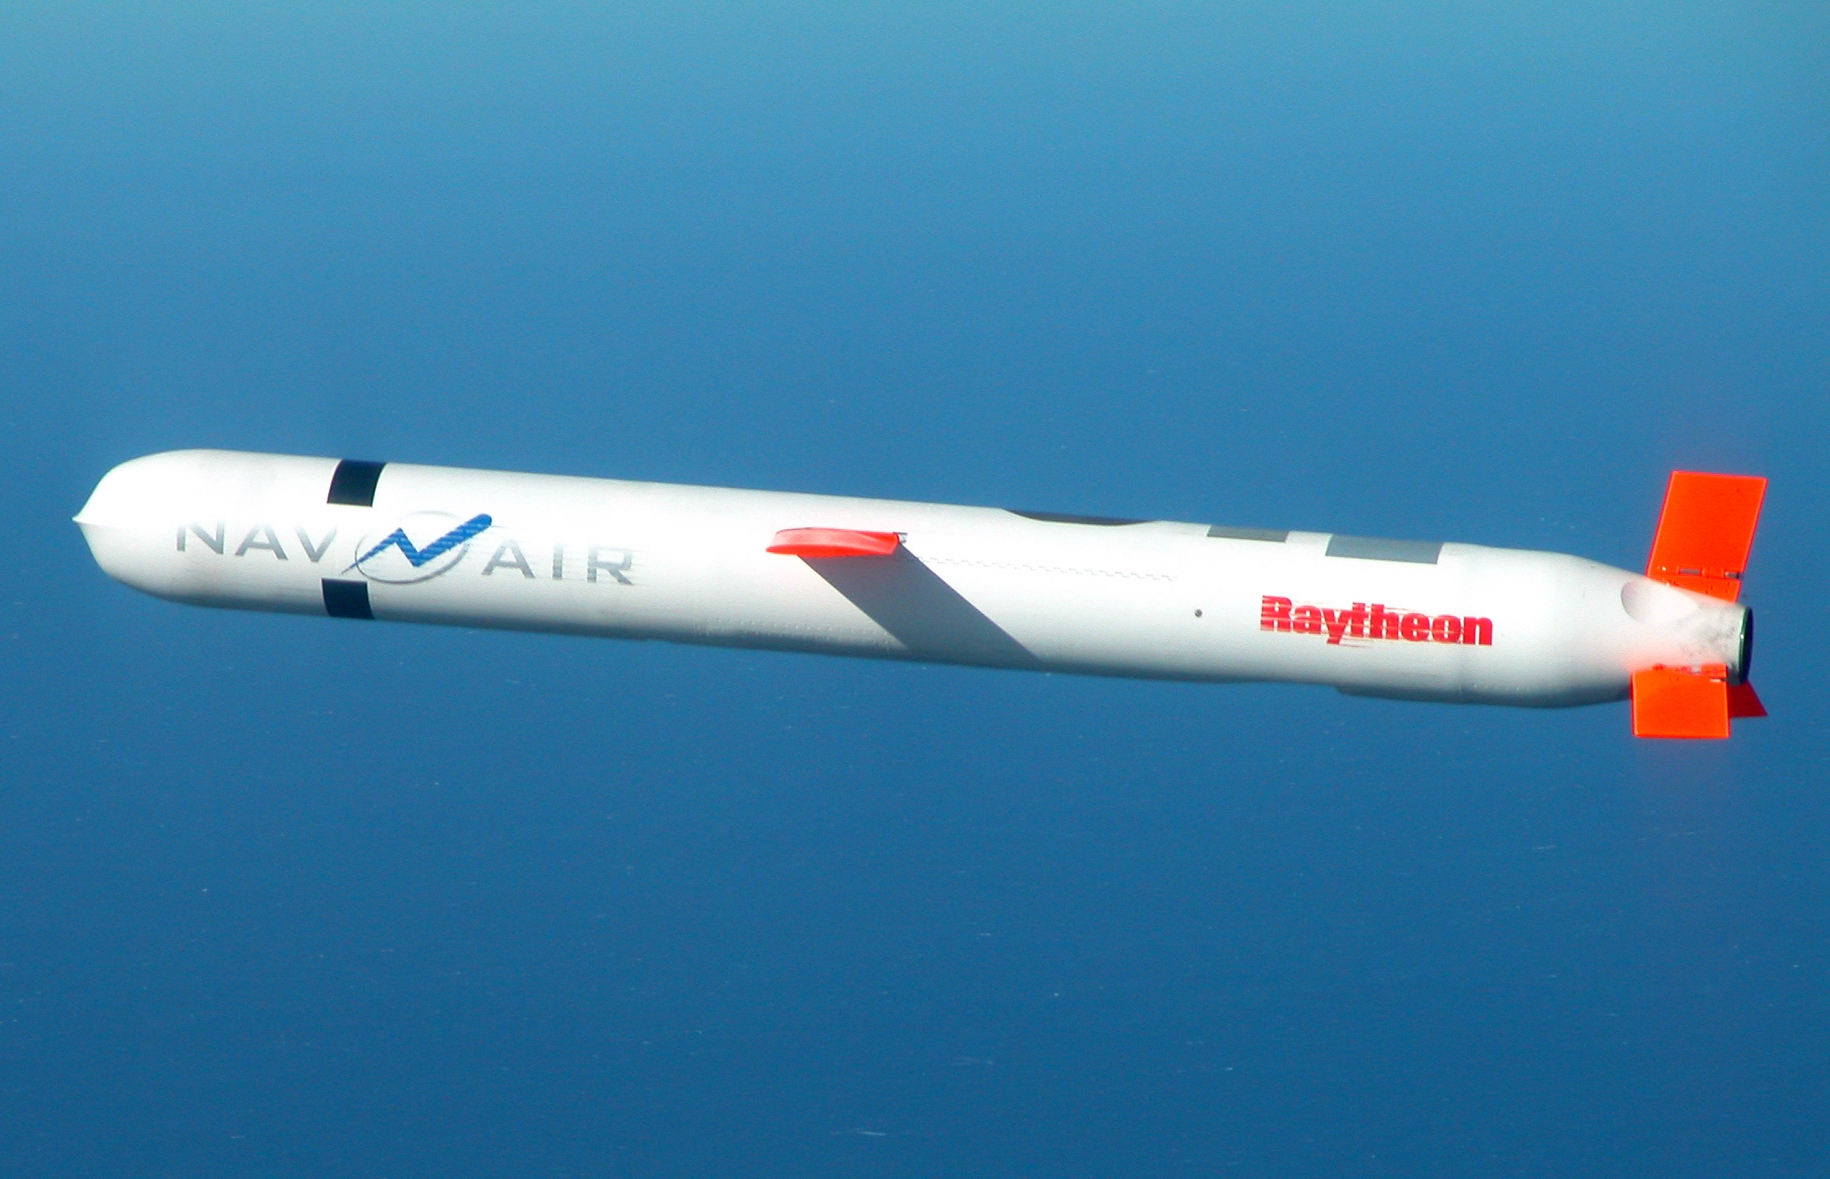 Япония хочет приобрести до 500 американских крылатых ракет Tomahawk, которые могут поражать цели на расстоянии до 1850 км  стоимость контракта может 